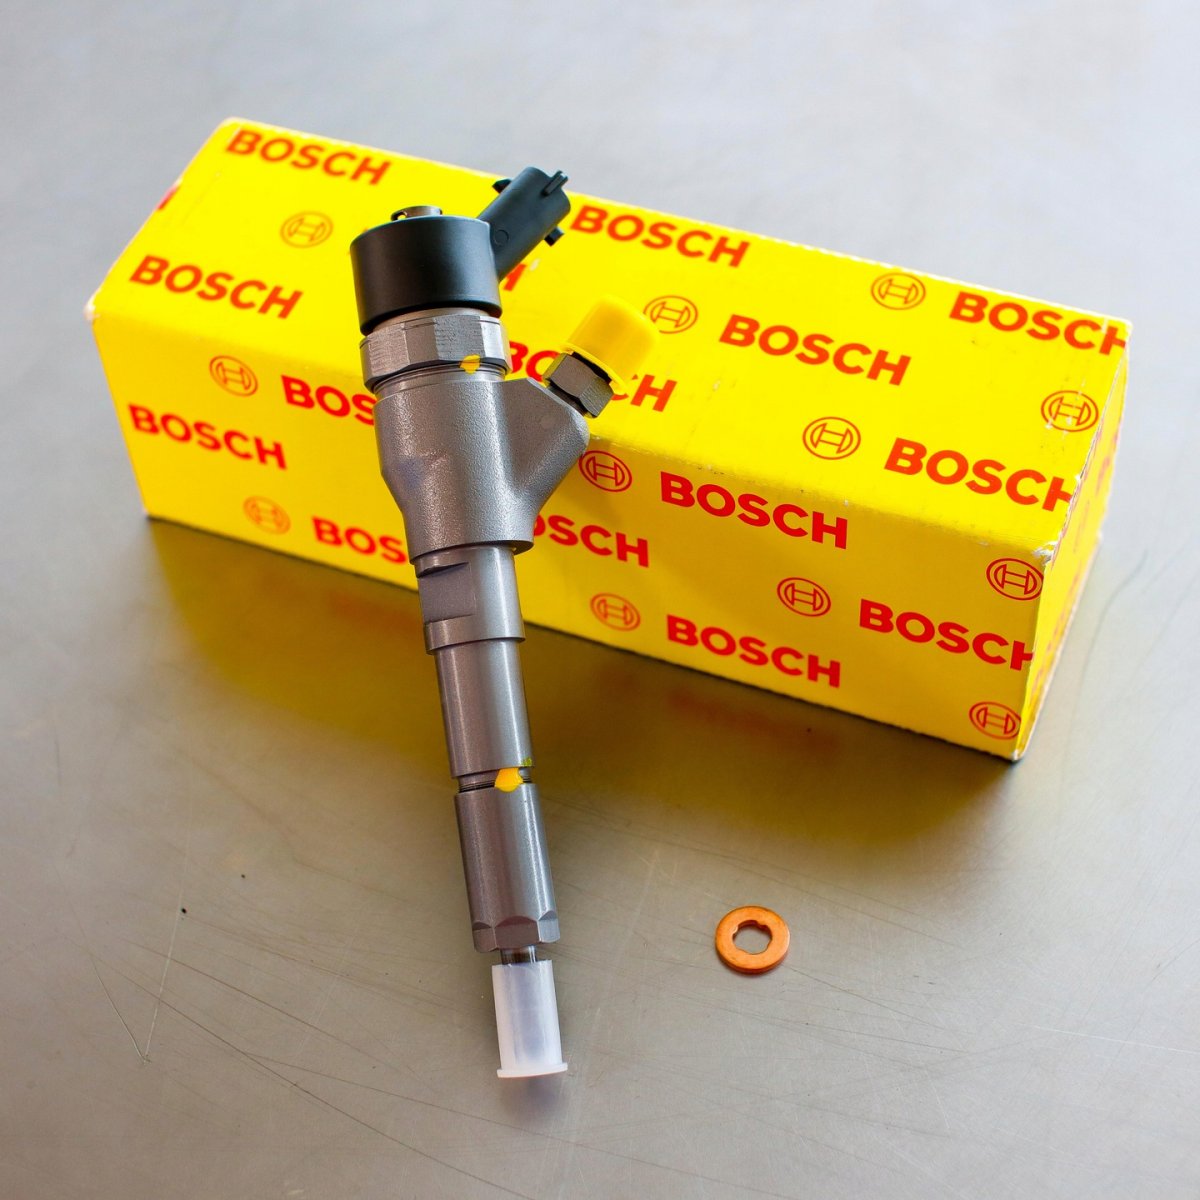 Wtryskiwacz Bosch po regeneracji gotowy do wysyłki do Klienta na gwarancji w korzystnej cenie